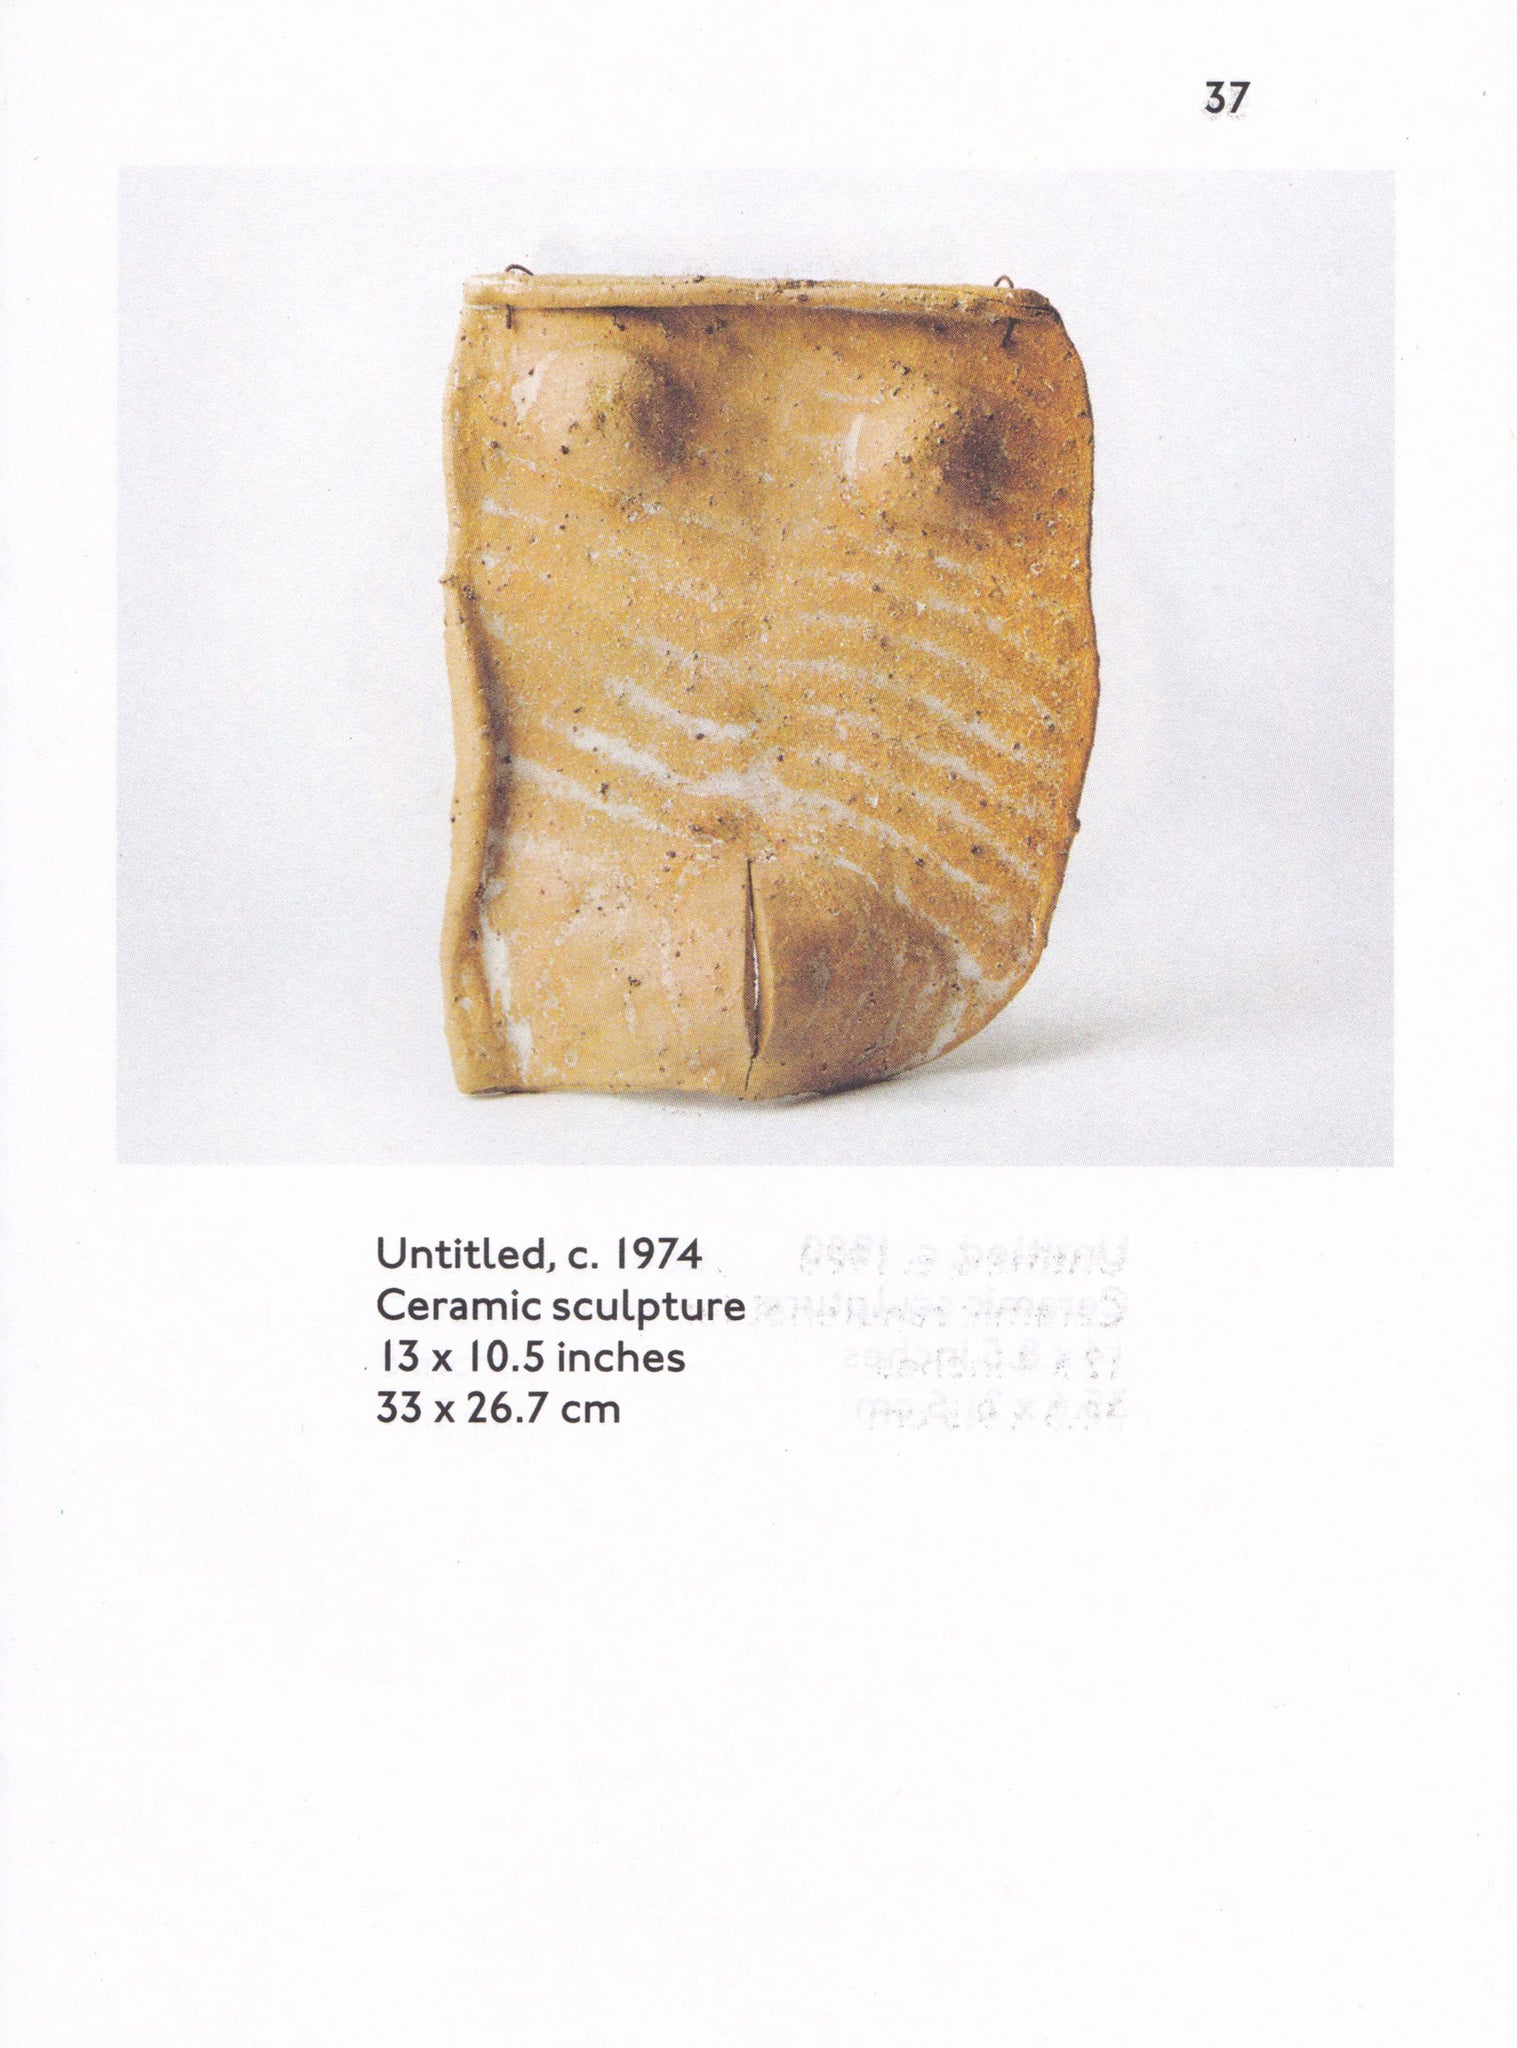 JB BLUNK Cups, plates, bowls & sculptures: ceramics 1950–1999 — 3rd Edition